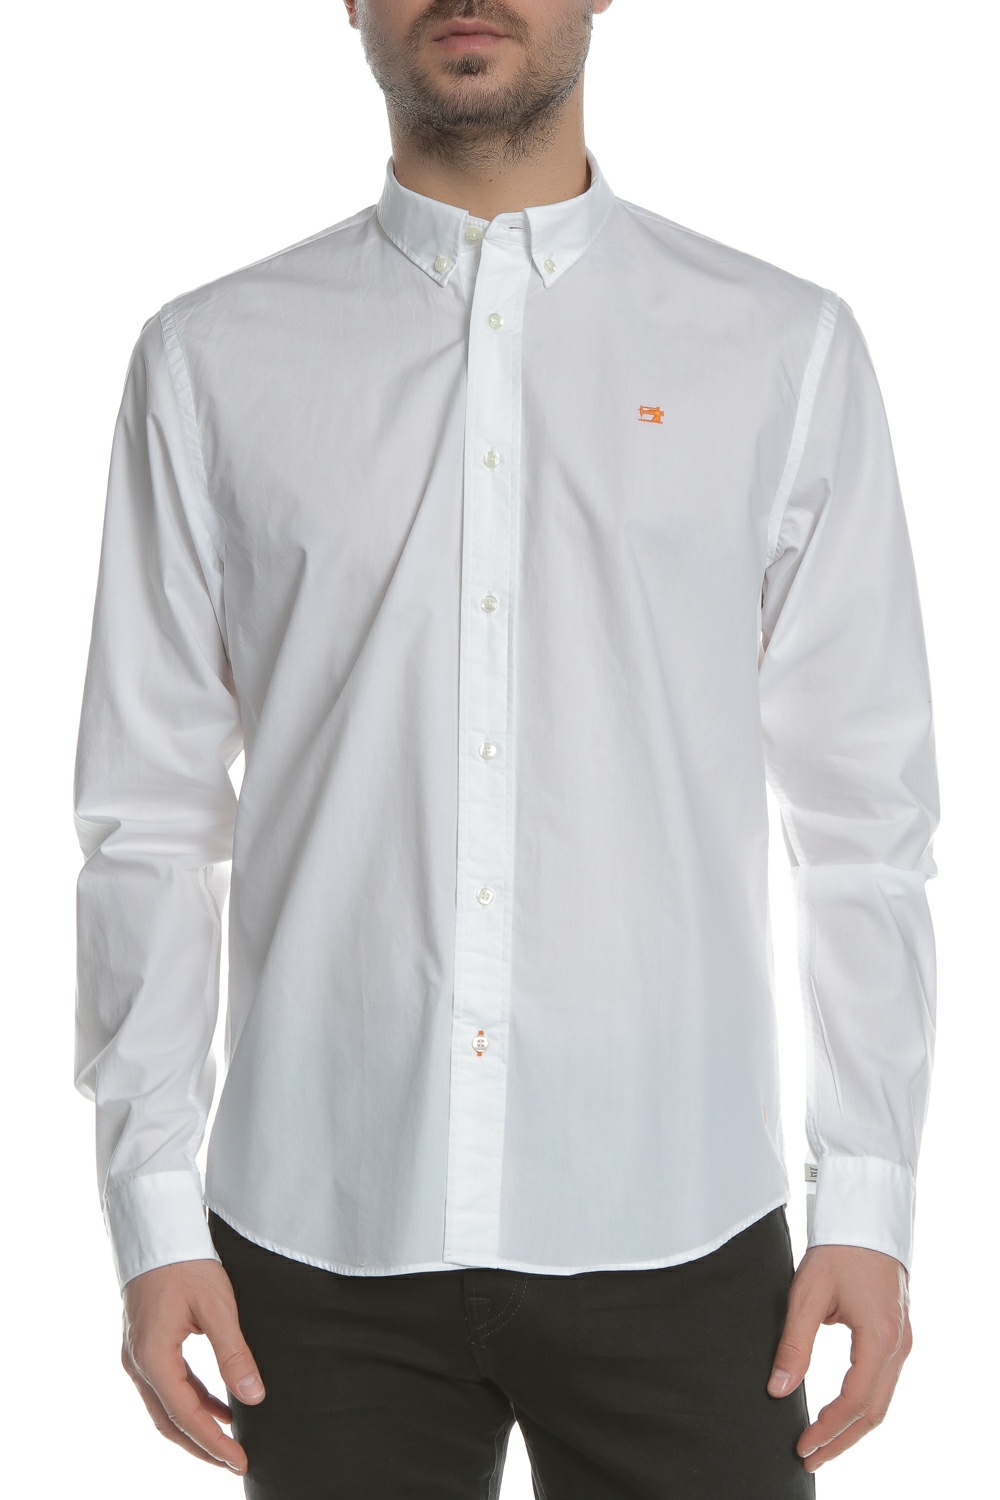 Ανδρικά/Ρούχα/Πουκάμισα/Μακρυμάνικα SCOTCH & SODA - Ανδρικό μακρυμάνικο πουκάμισο Scotch & Soda λευκό